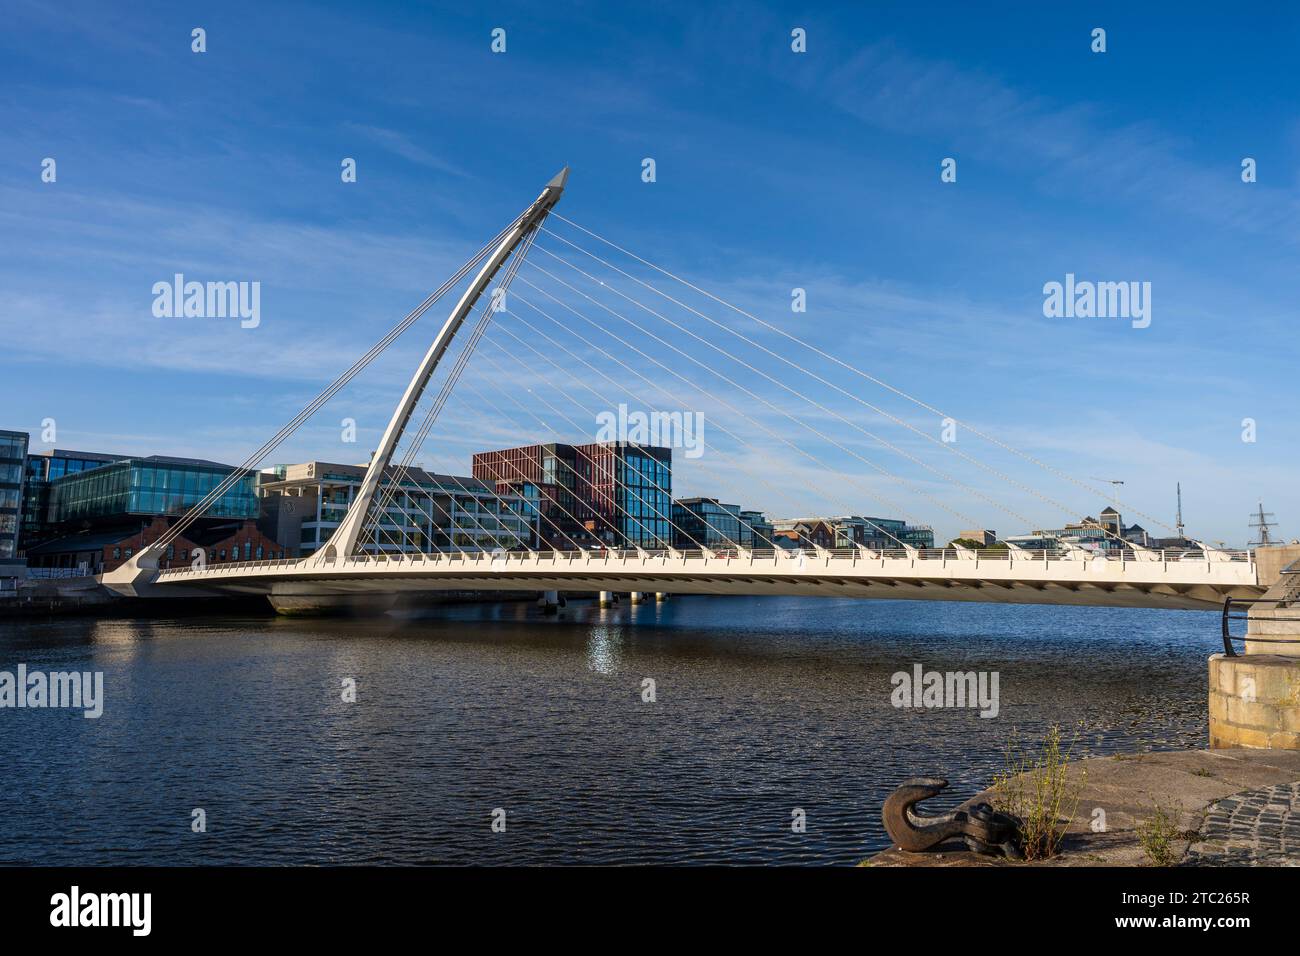 Samuel Beckett Bridge, un ponte sospeso a fune a Dublino, Irlanda, sul lato sud del fiume Liffey nell'area dei Docklands. Foto Stock